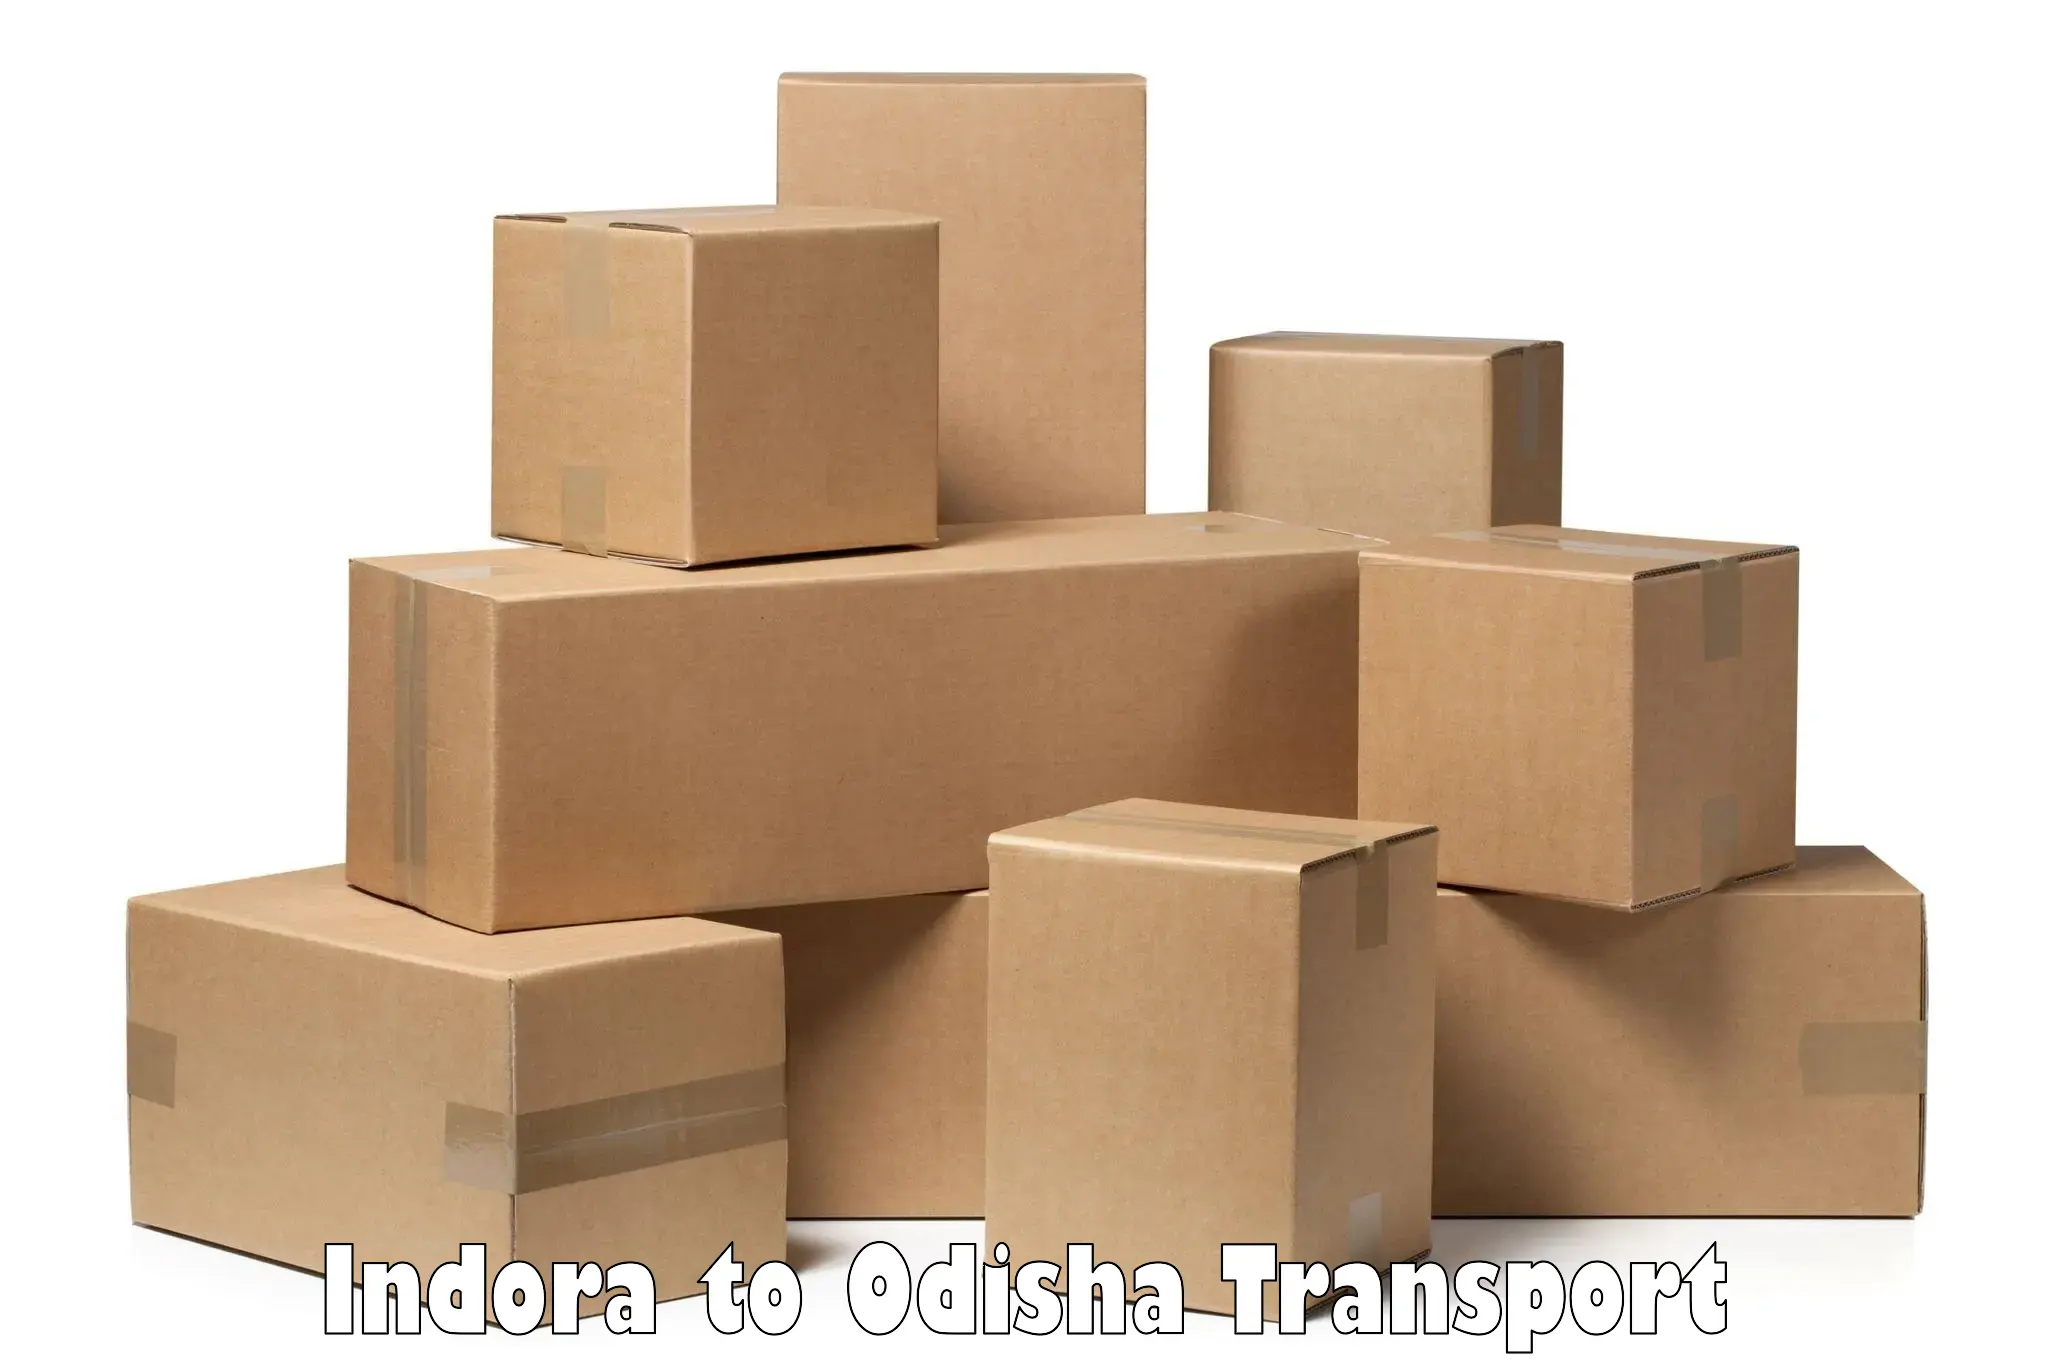 Daily parcel service transport Indora to Kamakhyanagar